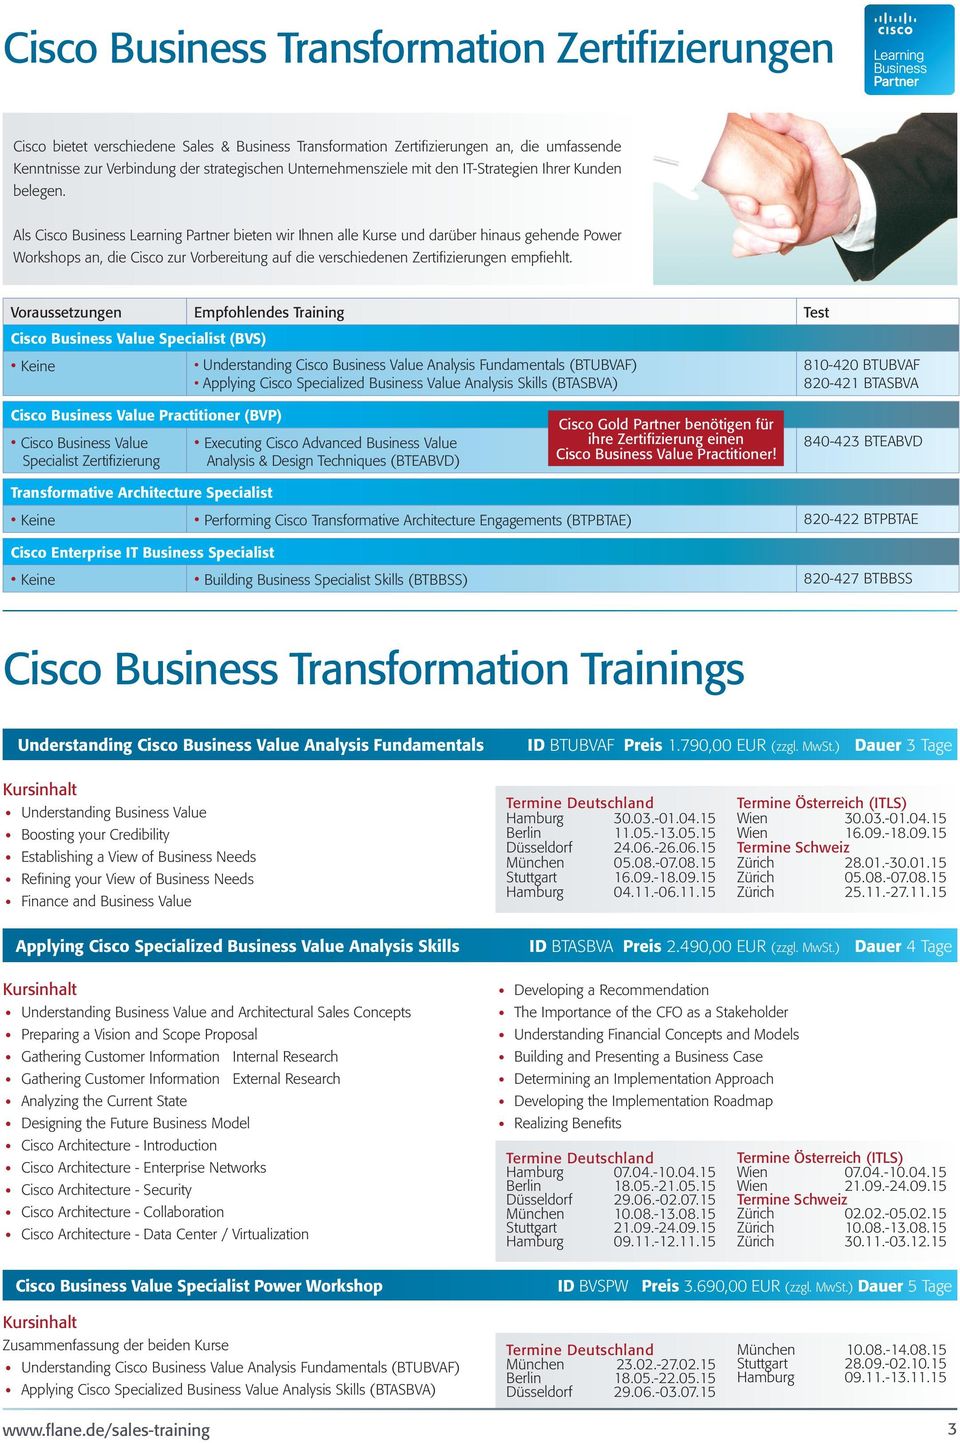 Als Cisco Business Learning Partner bieten wir Ihnen alle Kurse und darüber hinaus gehende Power Workshops an, die Cisco zur Vorbereitung auf die verschiedenen Zertifizierungen empfiehlt.